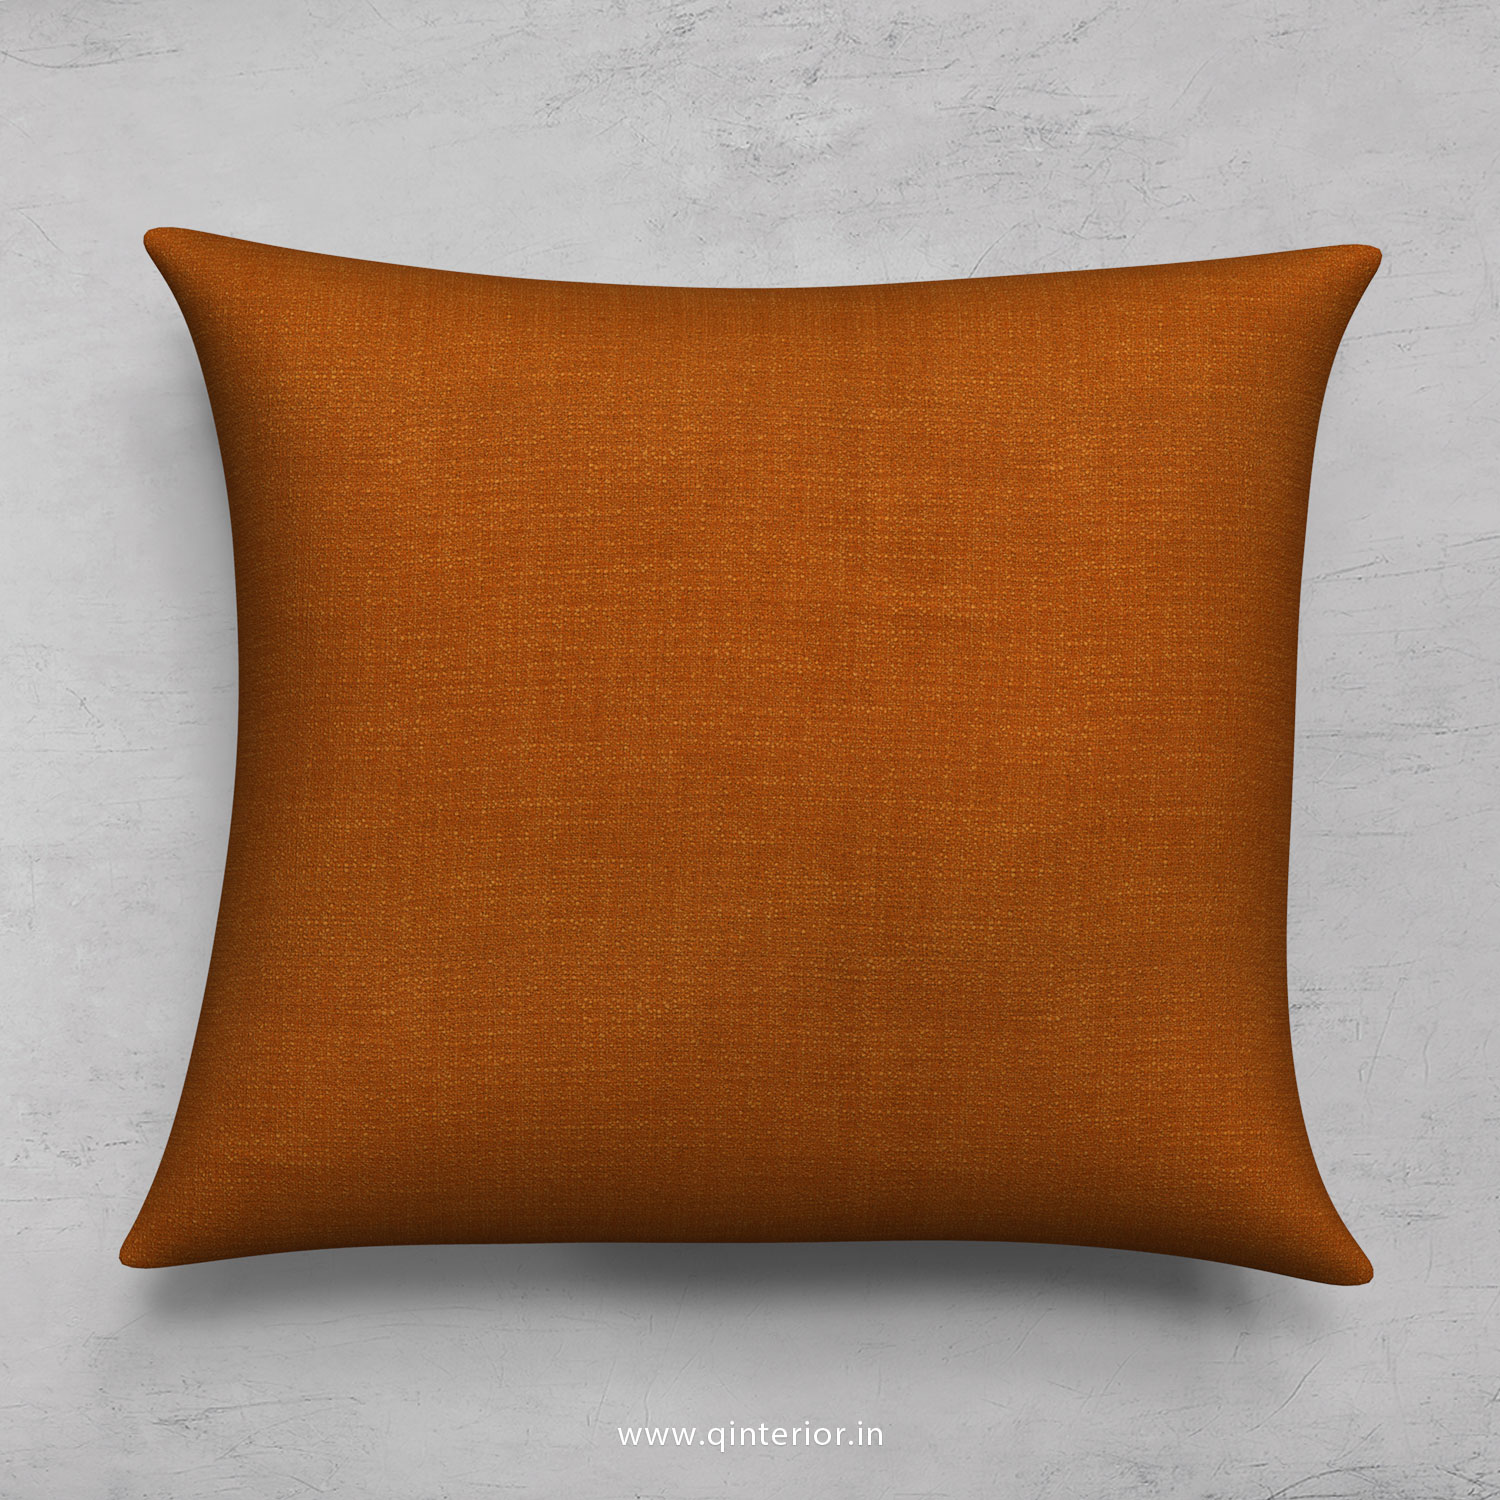 Cushion with Cushion Cover in  Cotton Plain - CUS001 CP21